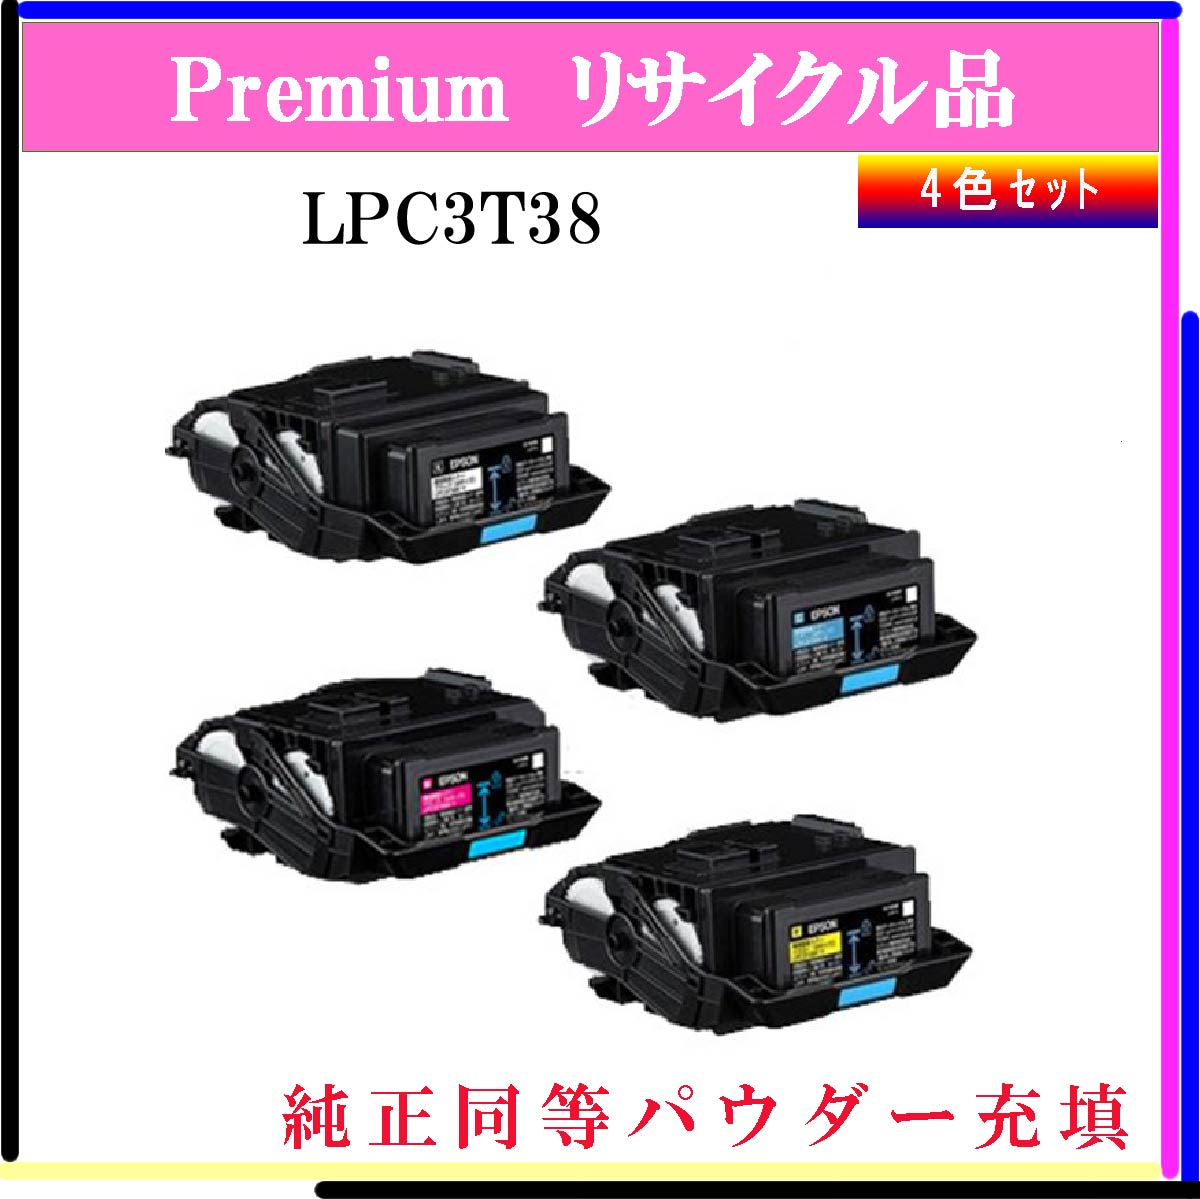 LPC3T38 (4色ｾｯﾄ) (純正同等ﾊﾟｳﾀﾞｰ)